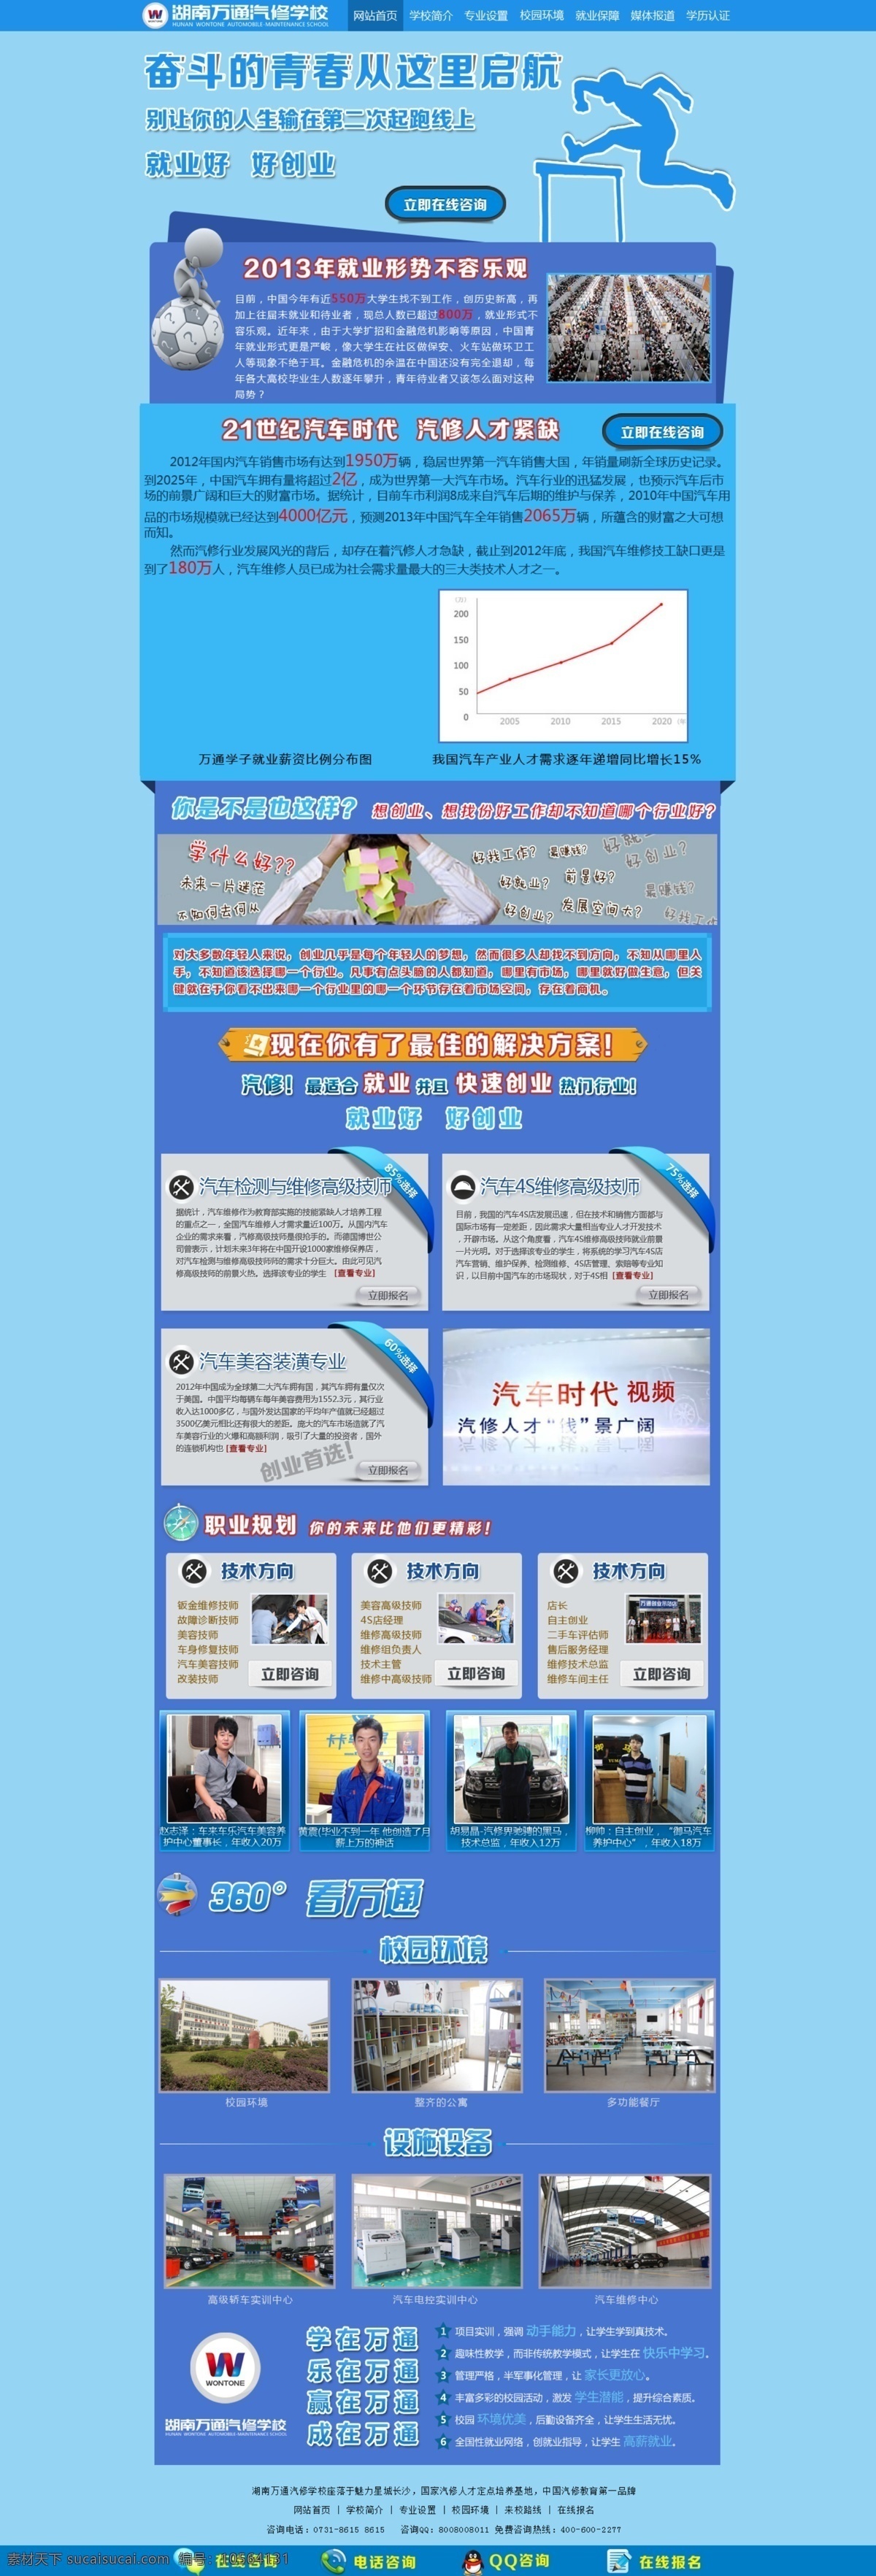 青年 创 就业 网页 专题 创业 网页素材 中文模板 汽车保有量 汽修行业 web 界面设计 其他网页素材